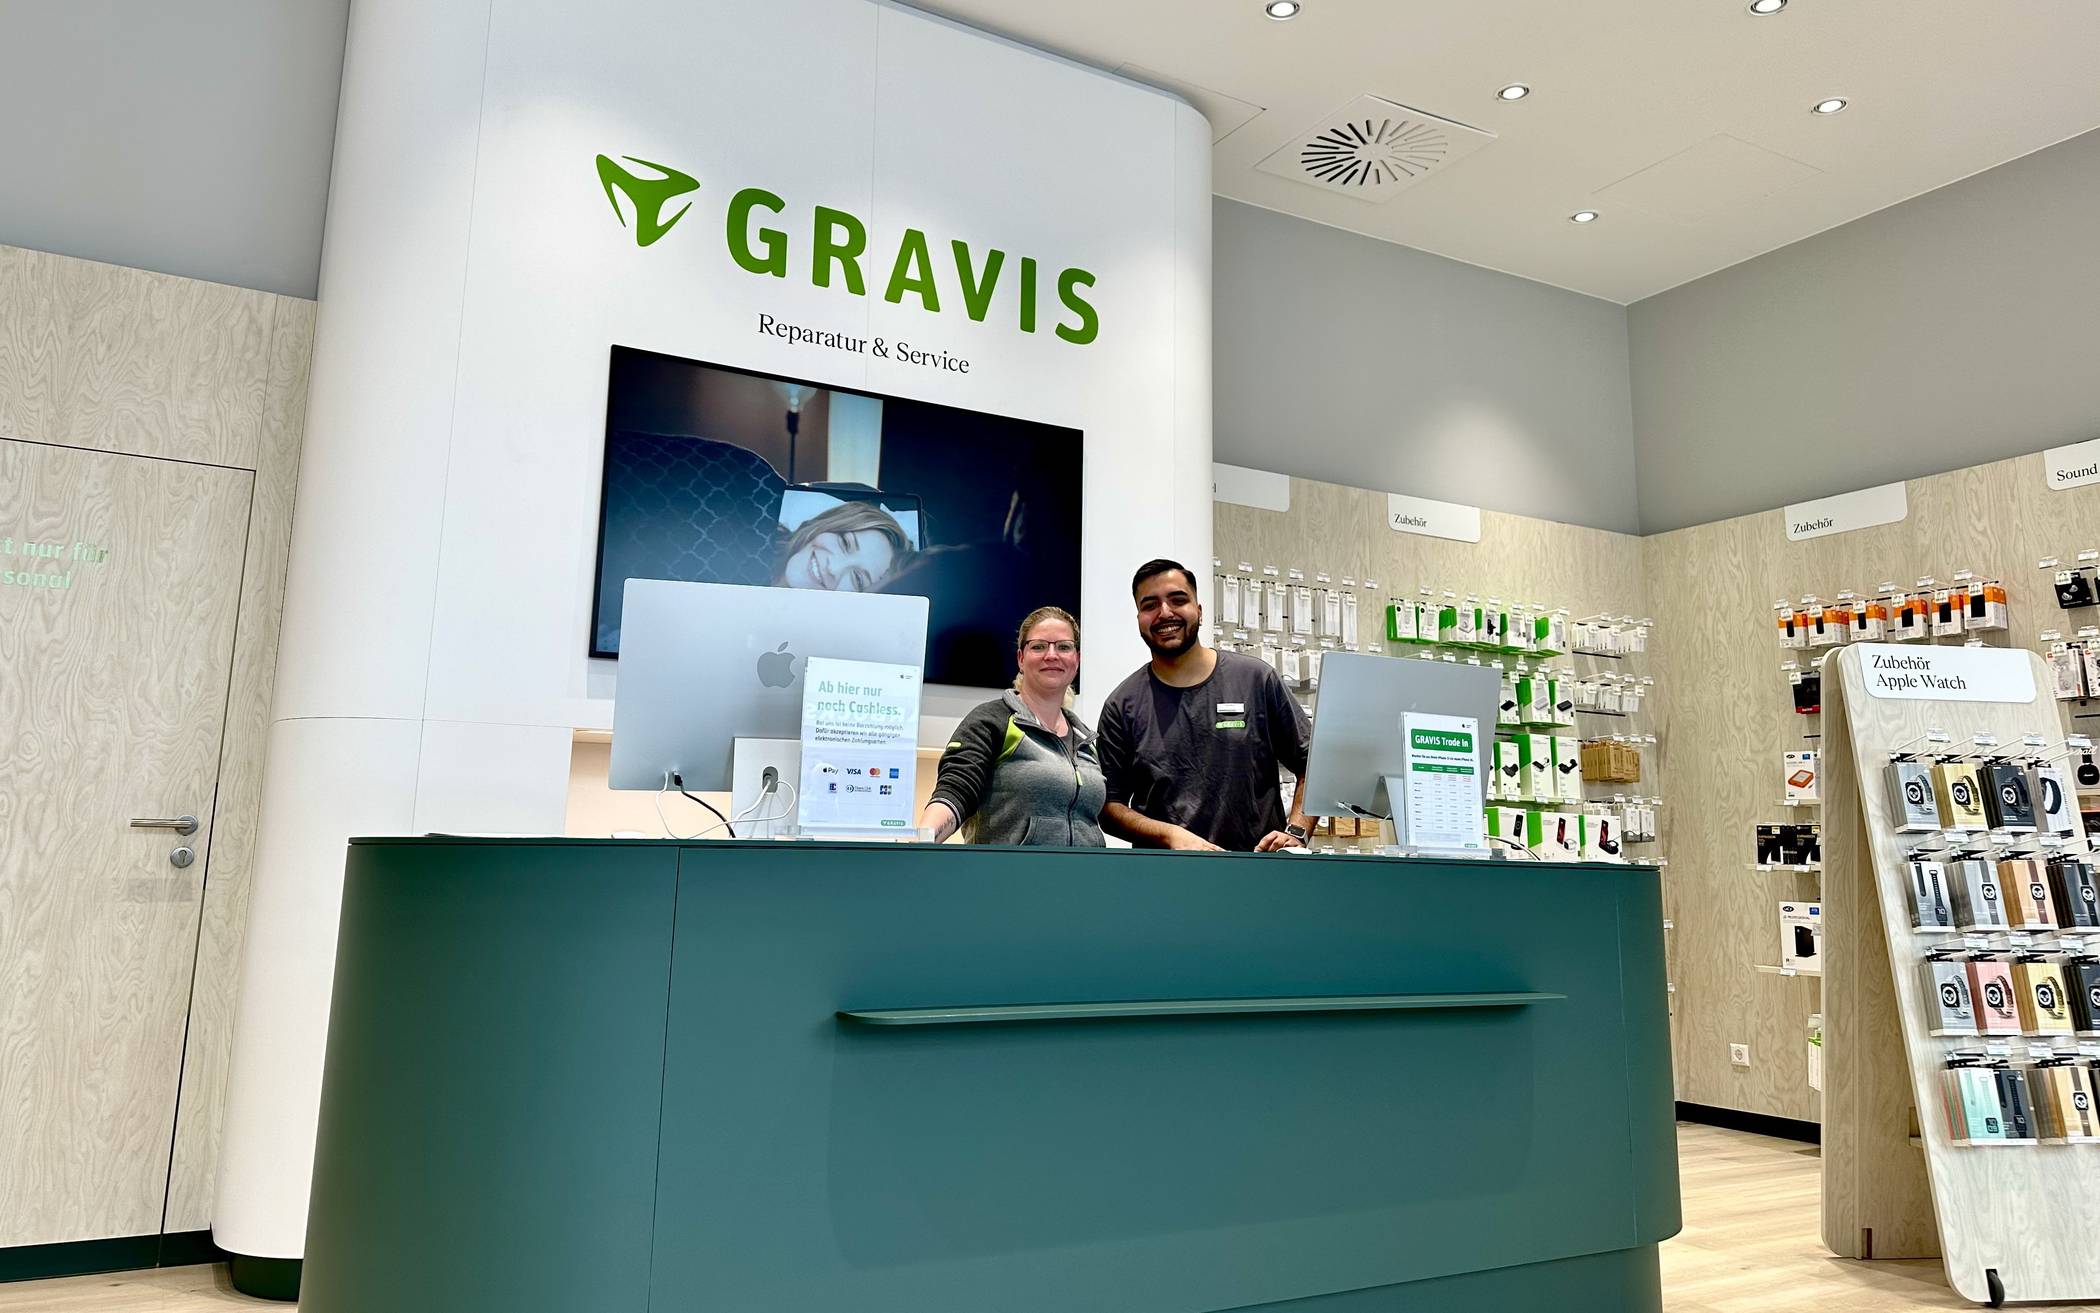  GRAVIS hat nun auch einen Standort in Wuppertal. 